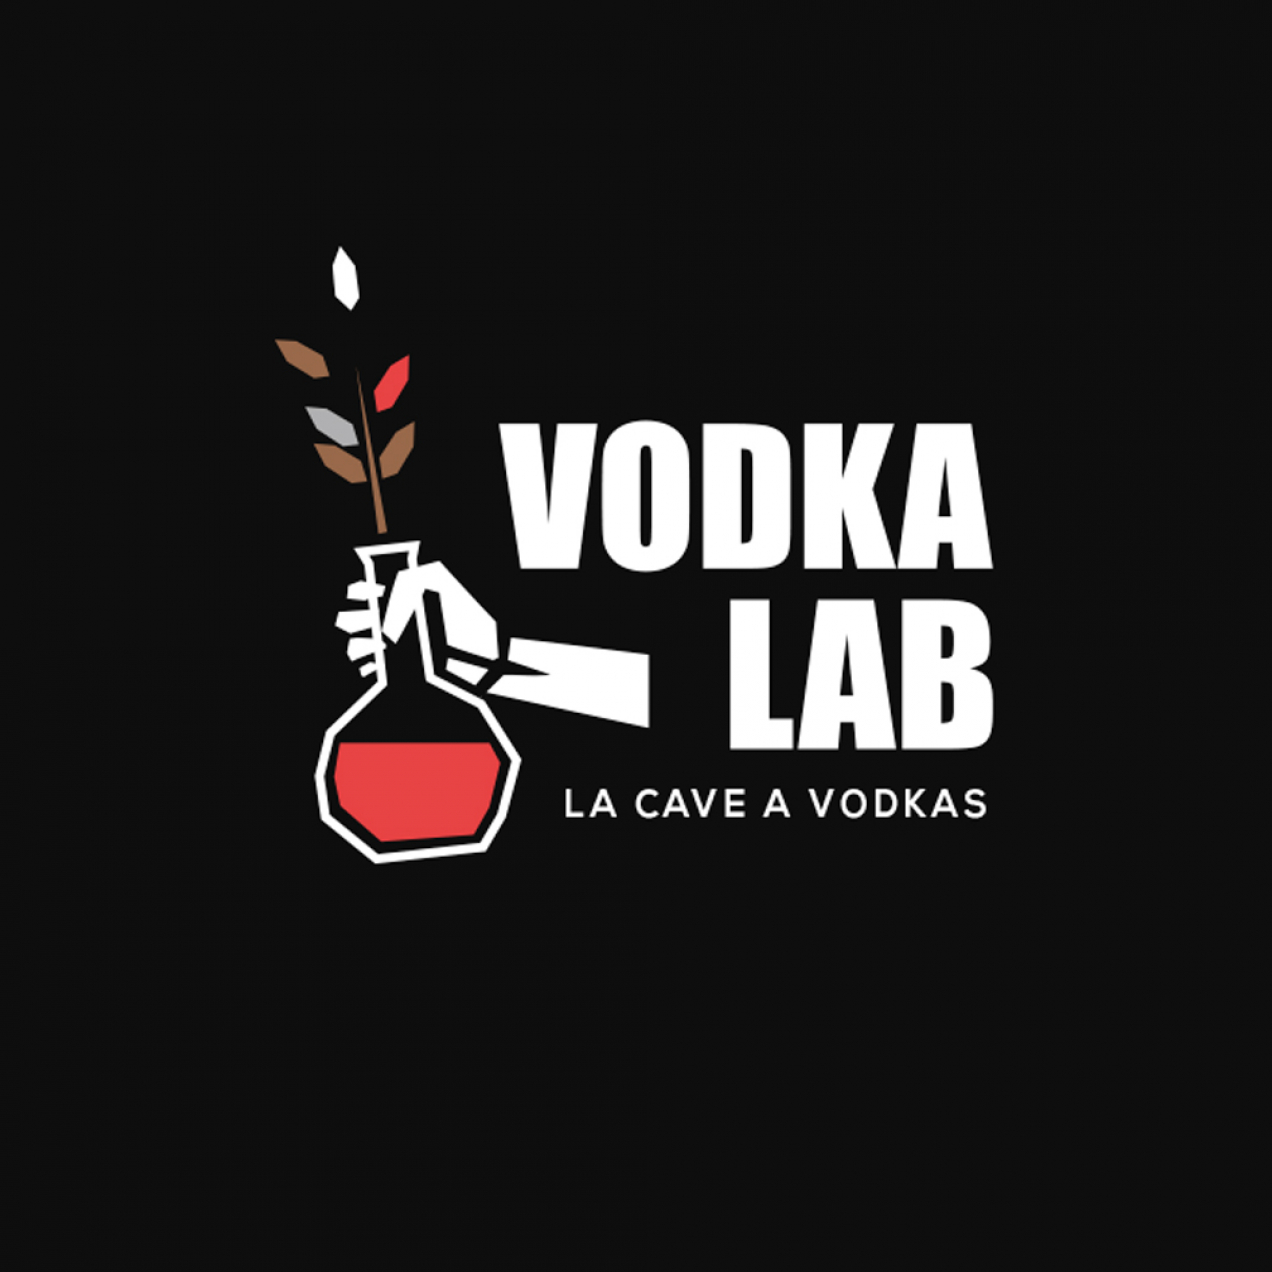 Vodka Lab, la première cave à vodkas de Paris